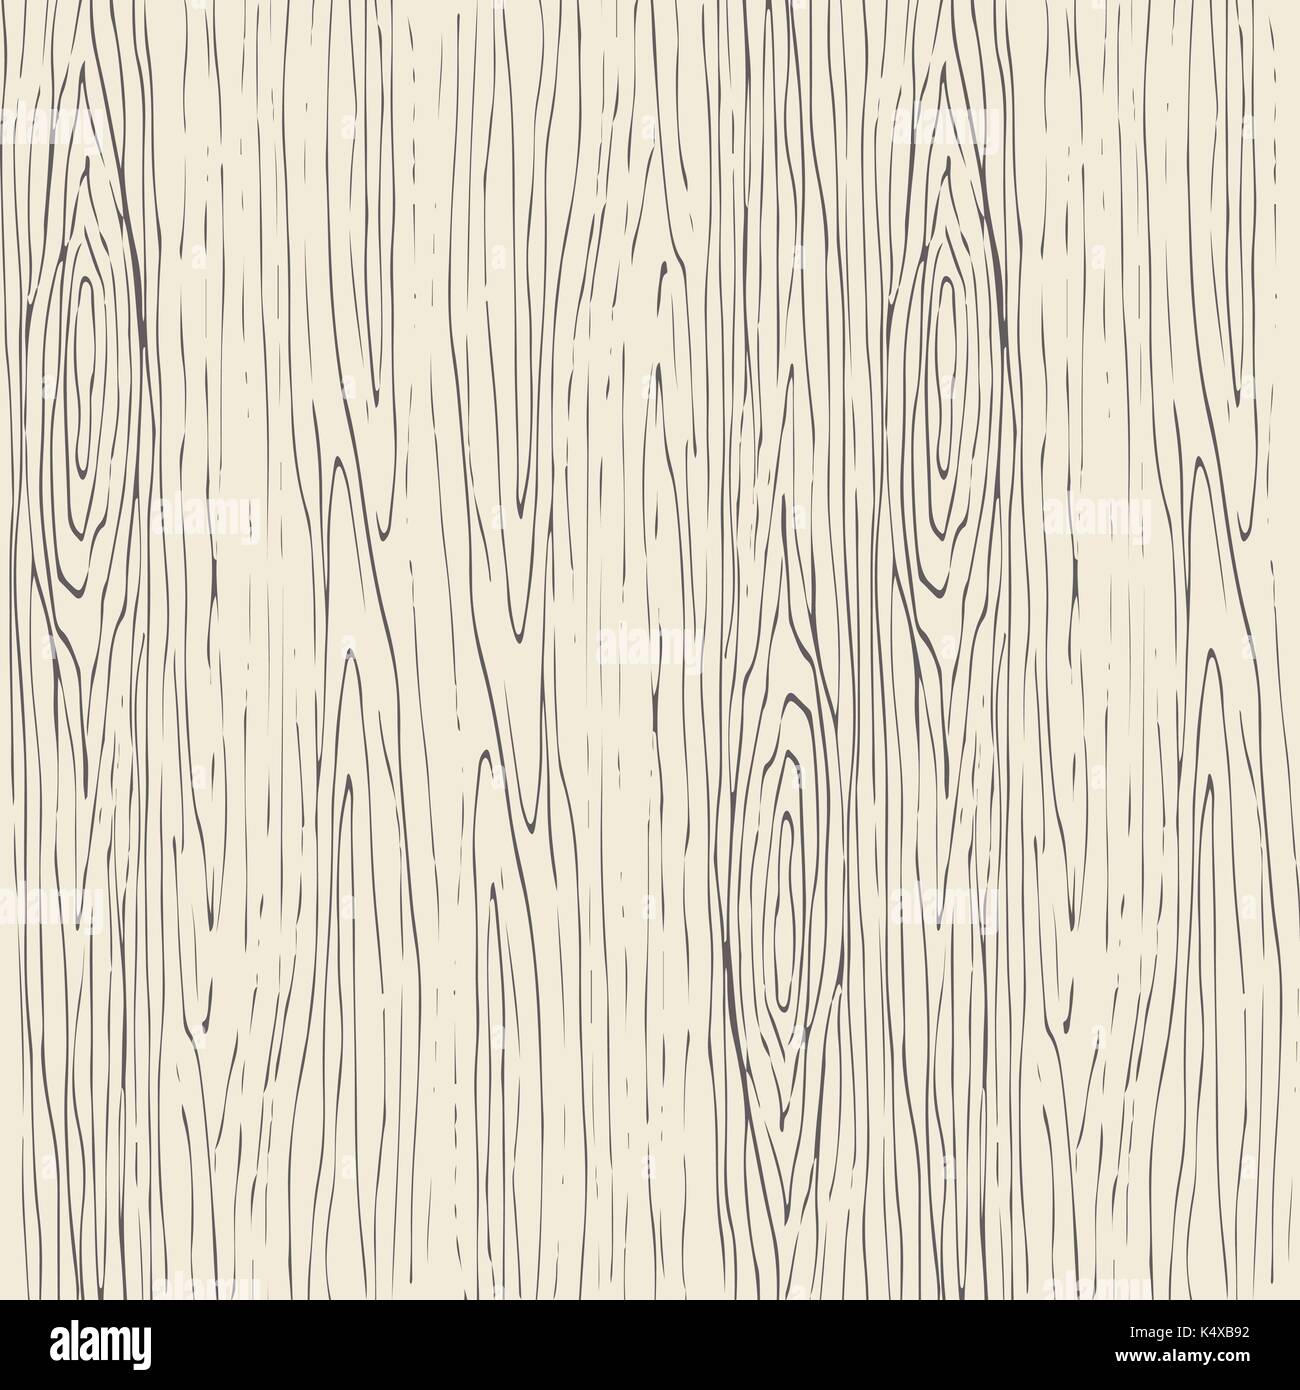 Seamless wood grain pattern. La texture de fond vecteur en bois. Illustration de Vecteur